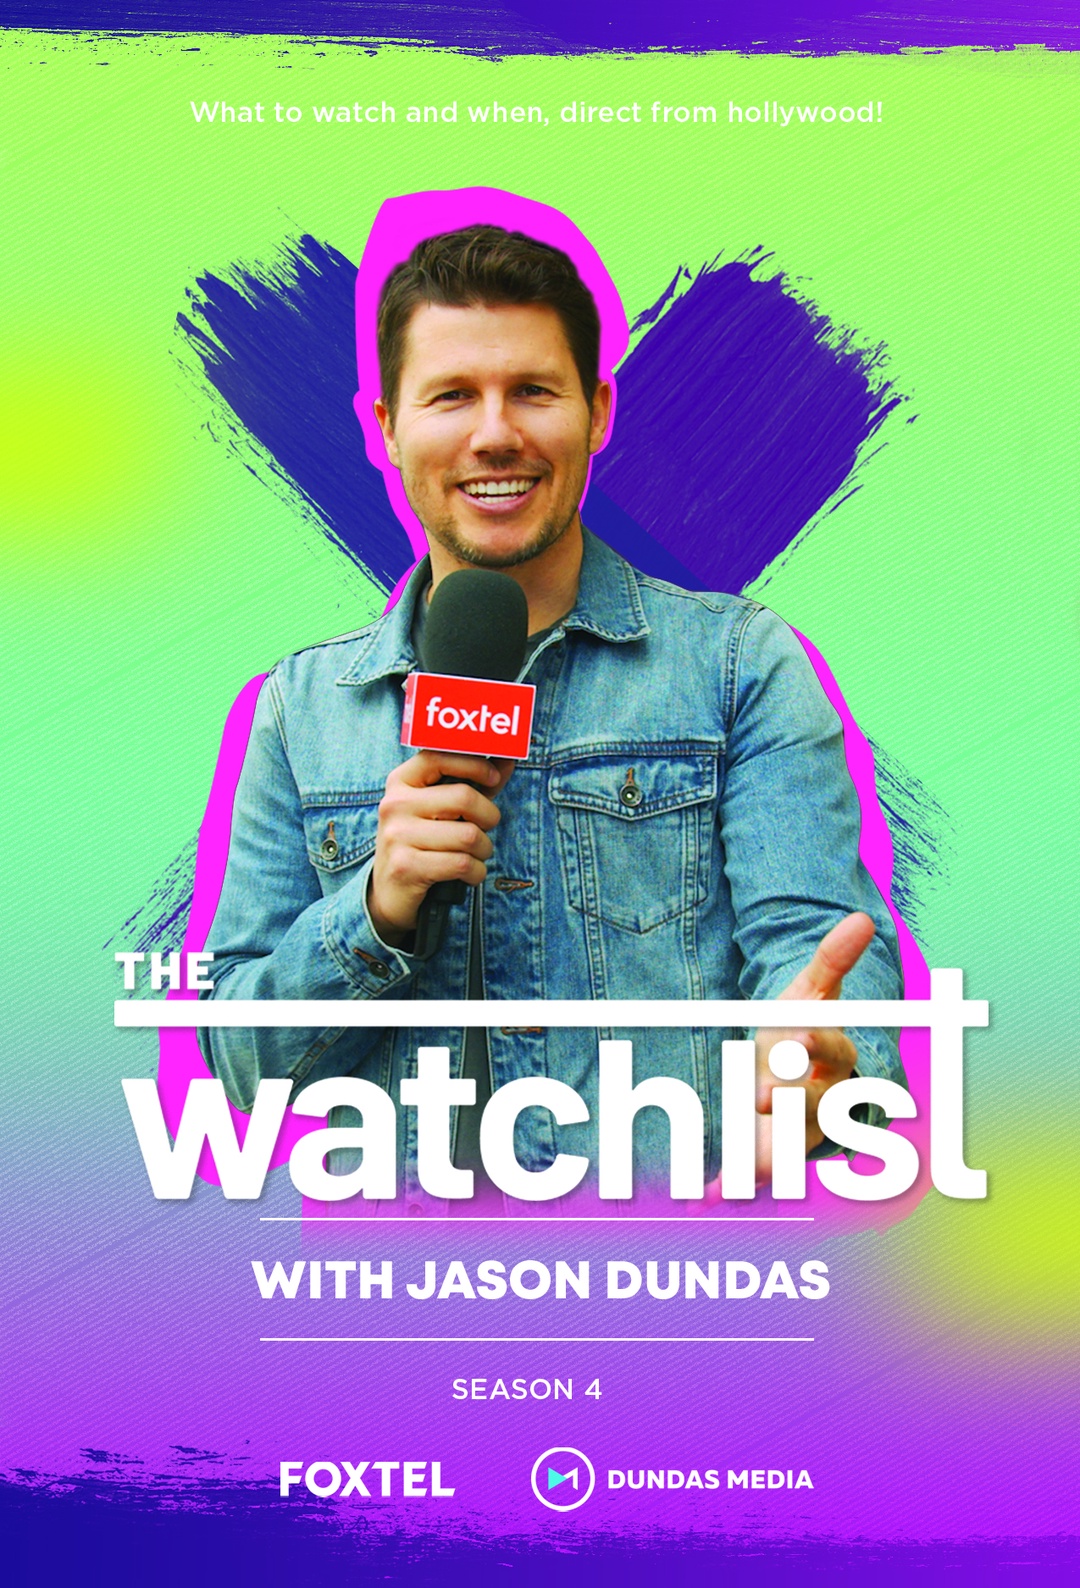 The Watchlist with Jason Dundas